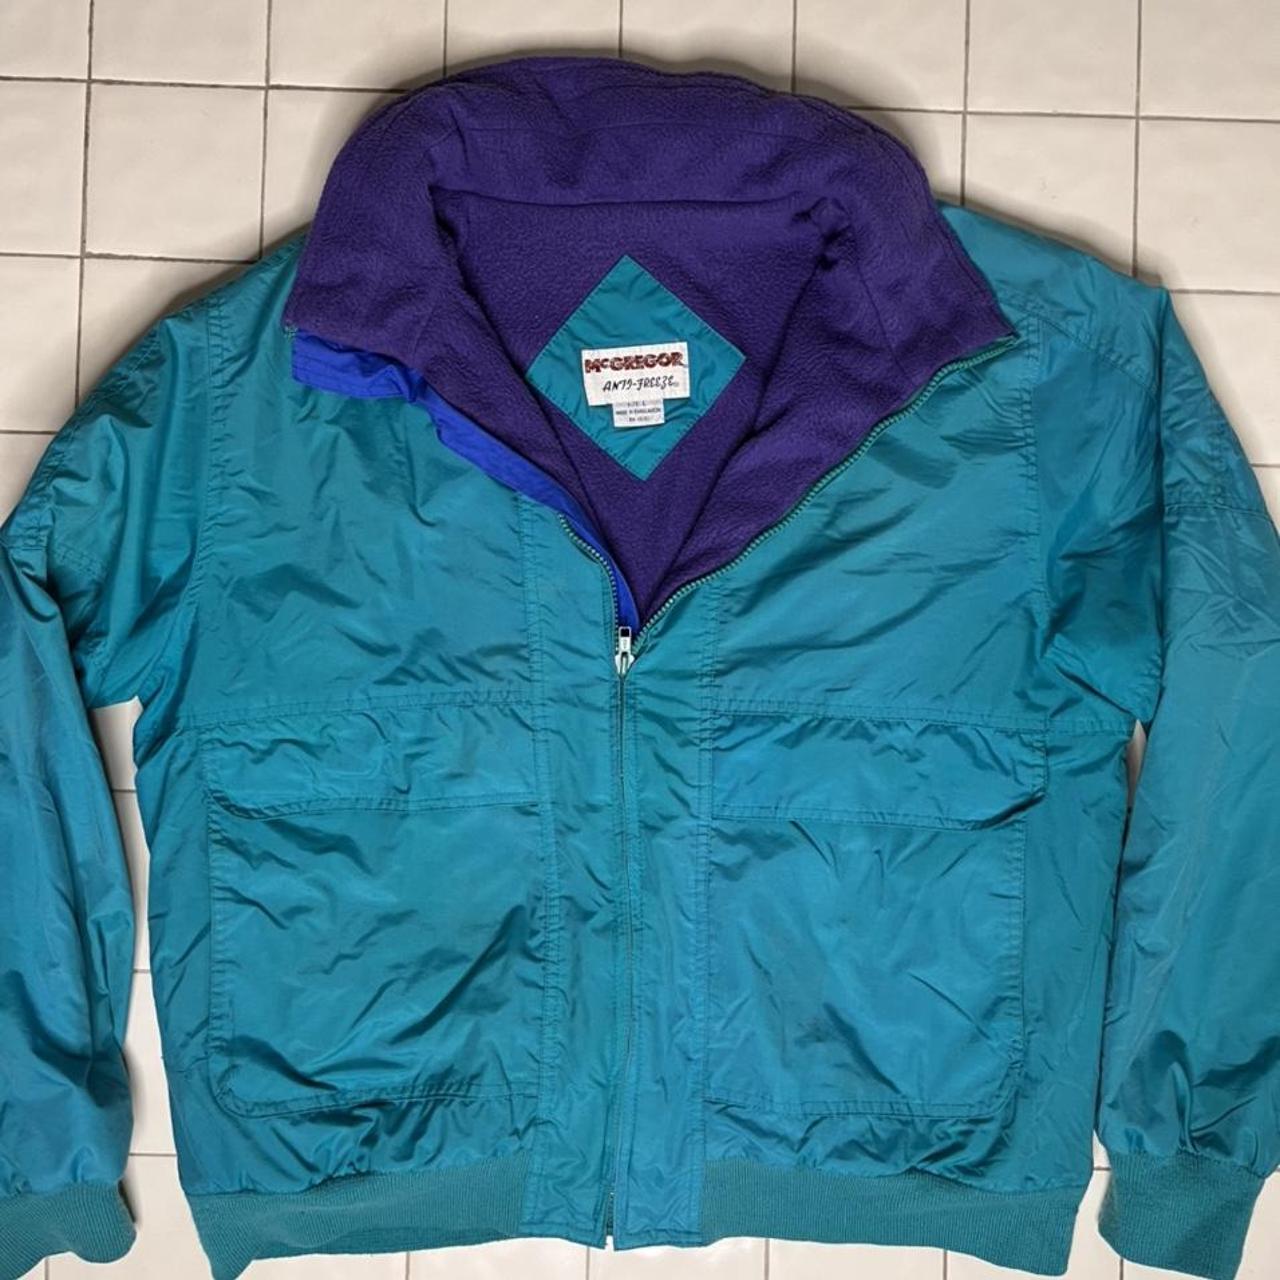 vintage 80s McGregor AntiFreeze jacket size large!... - Depop